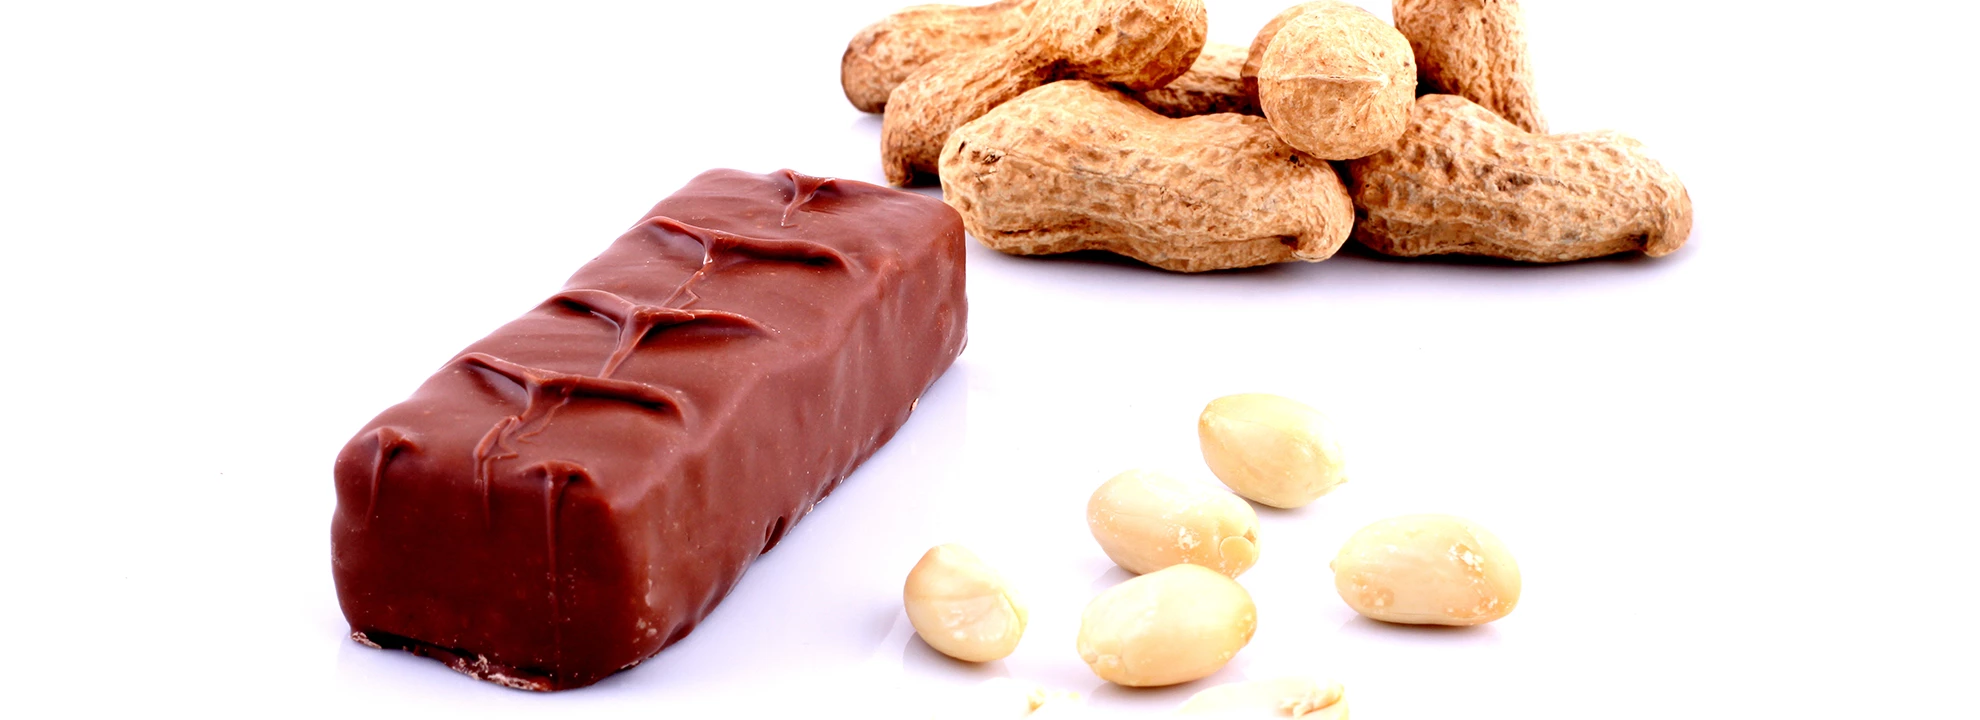 Peut-on consommer des Snickers Proteine toute l'année?